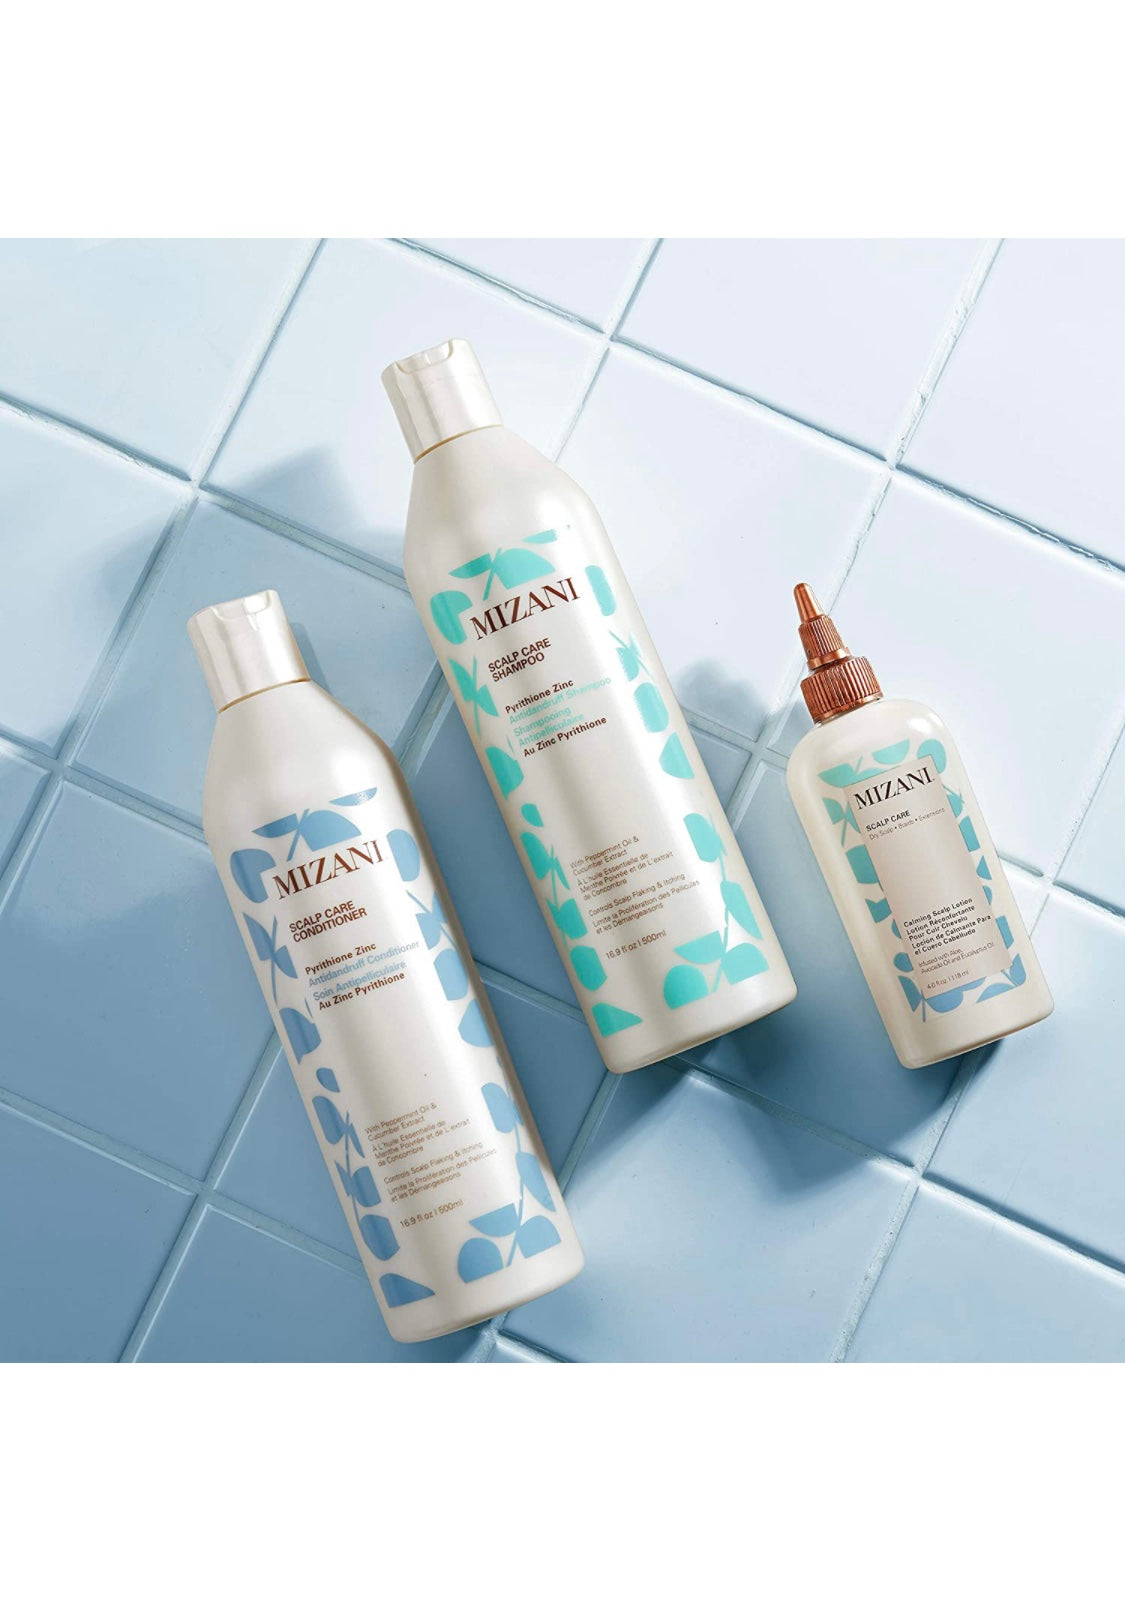 Mizani - Scalp care shampoo 16.9 fl. oz./ 500 ml